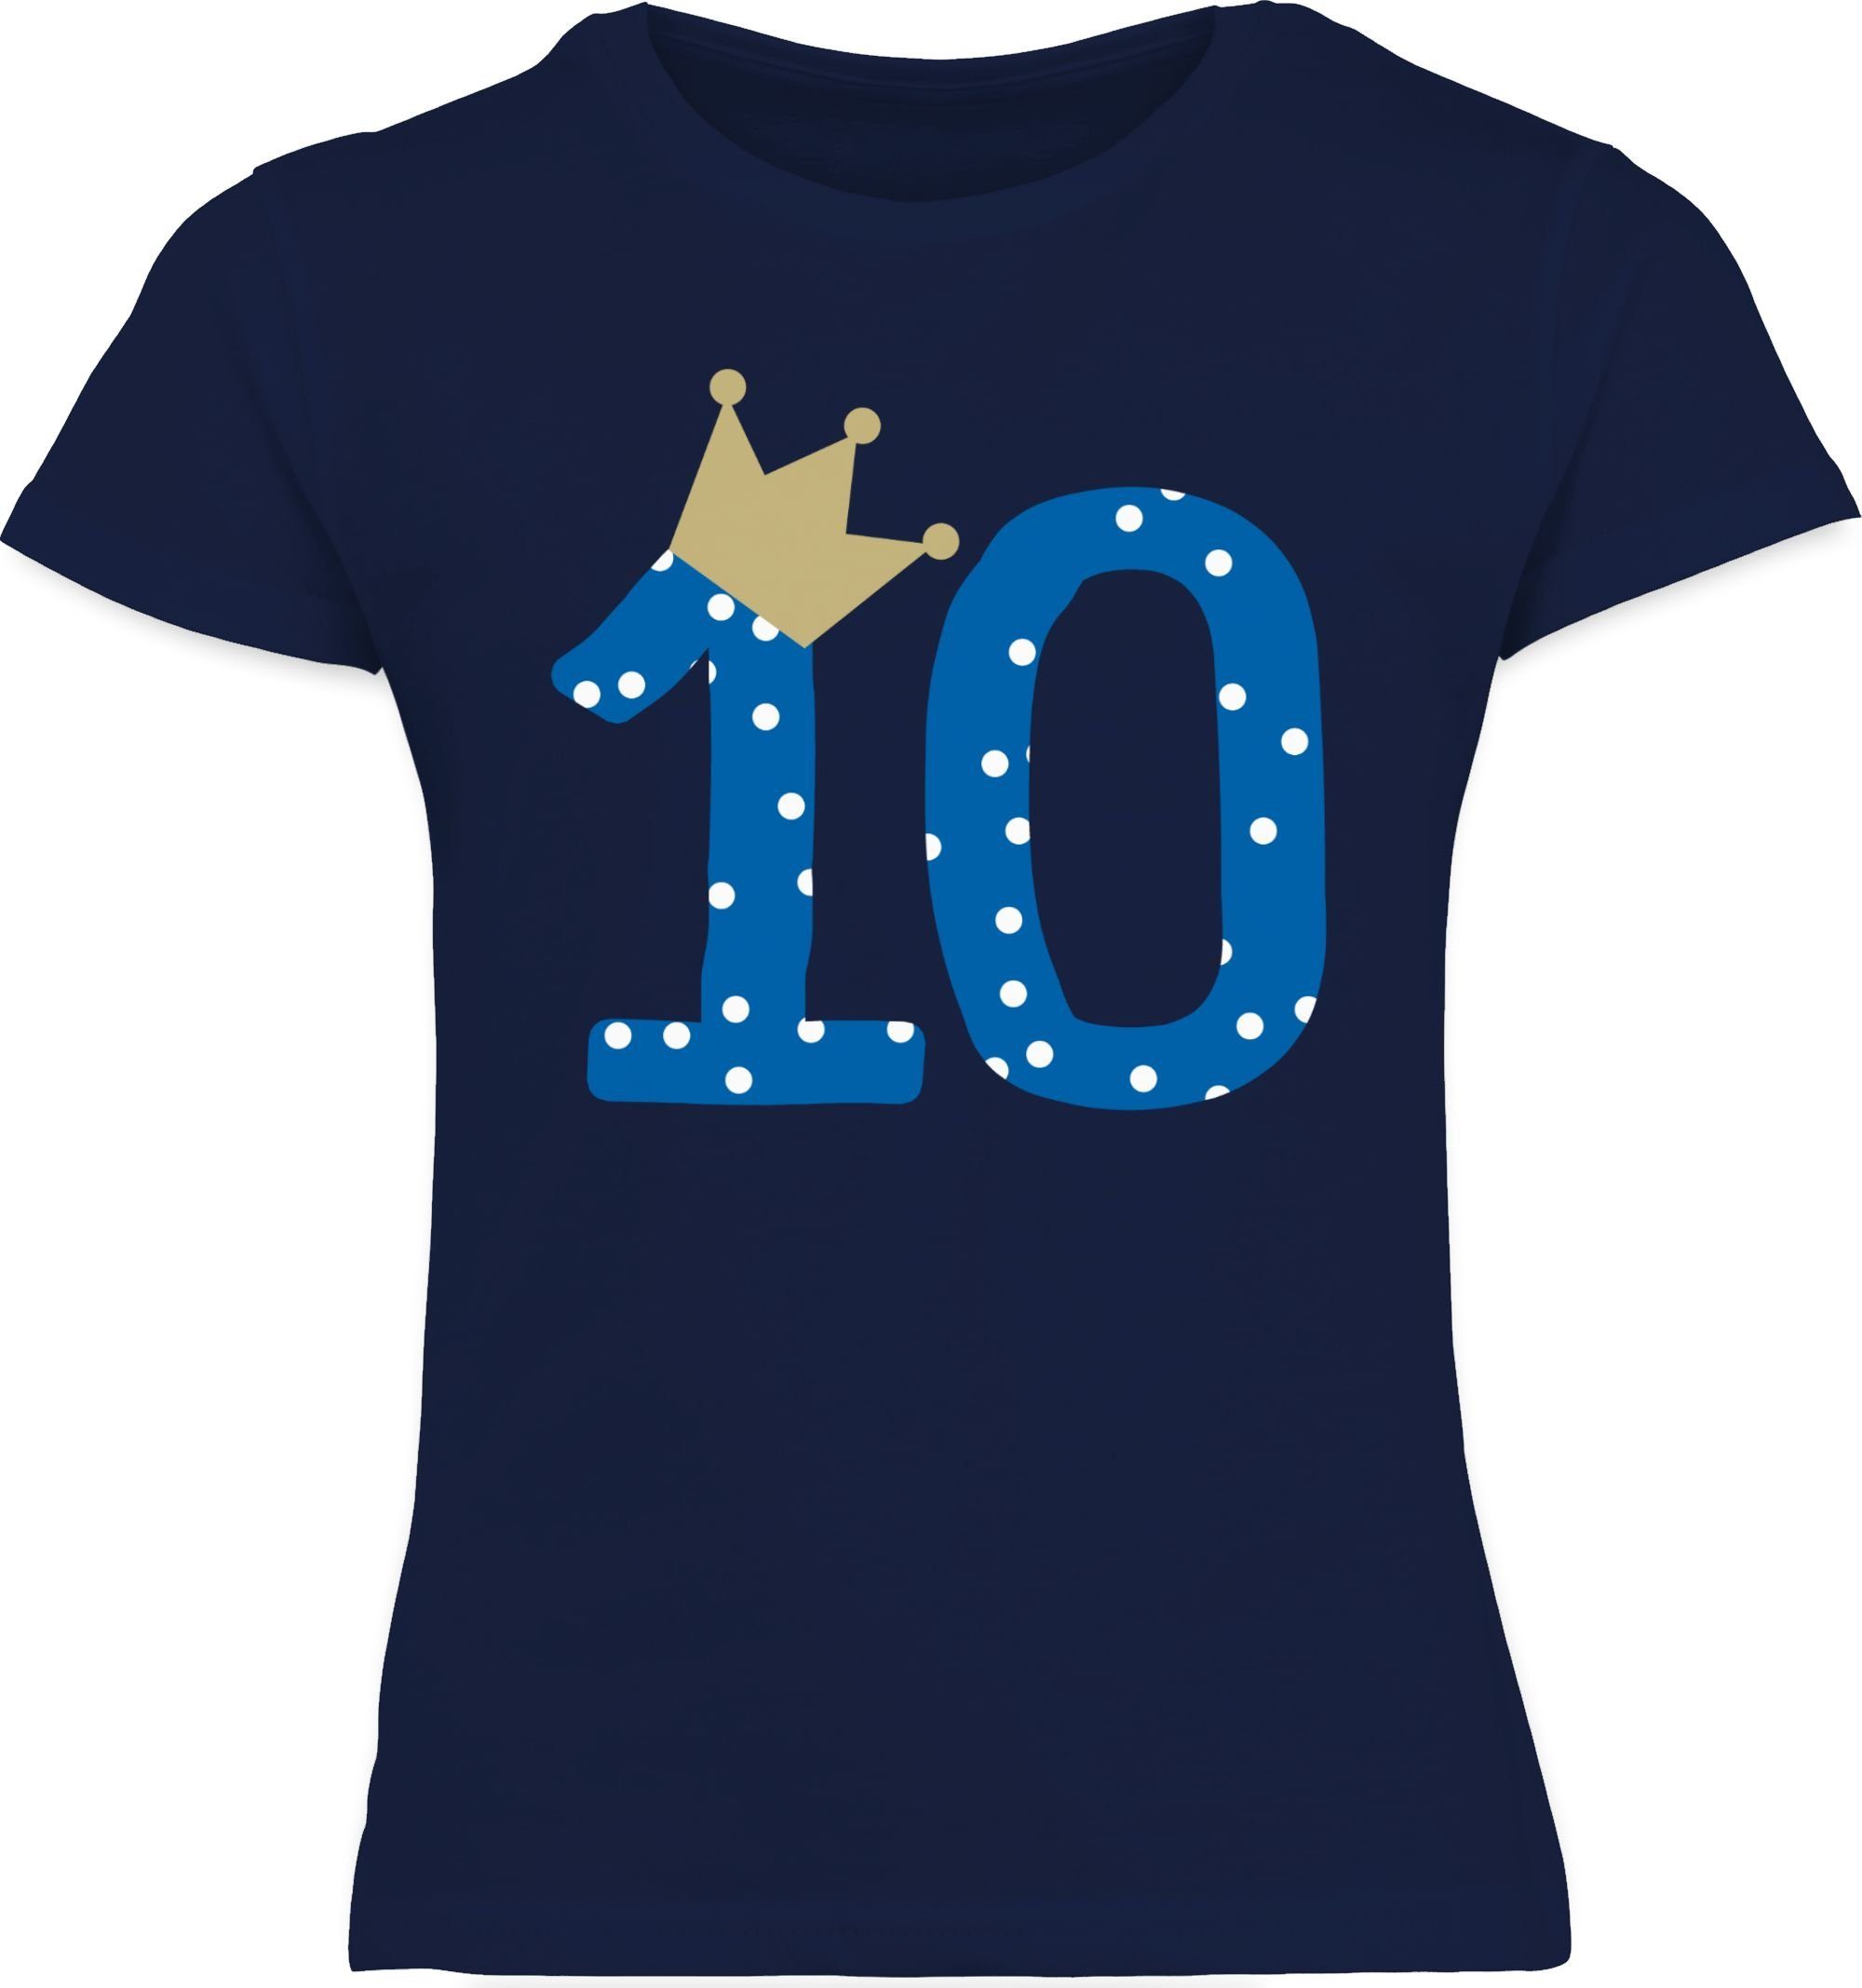 Wir stellen eine super berühmte Marke vor! Shirtracer T-Shirt 10 Dunkelblau 1 10. Geburtstag Zehnter Geburtstag Jahre